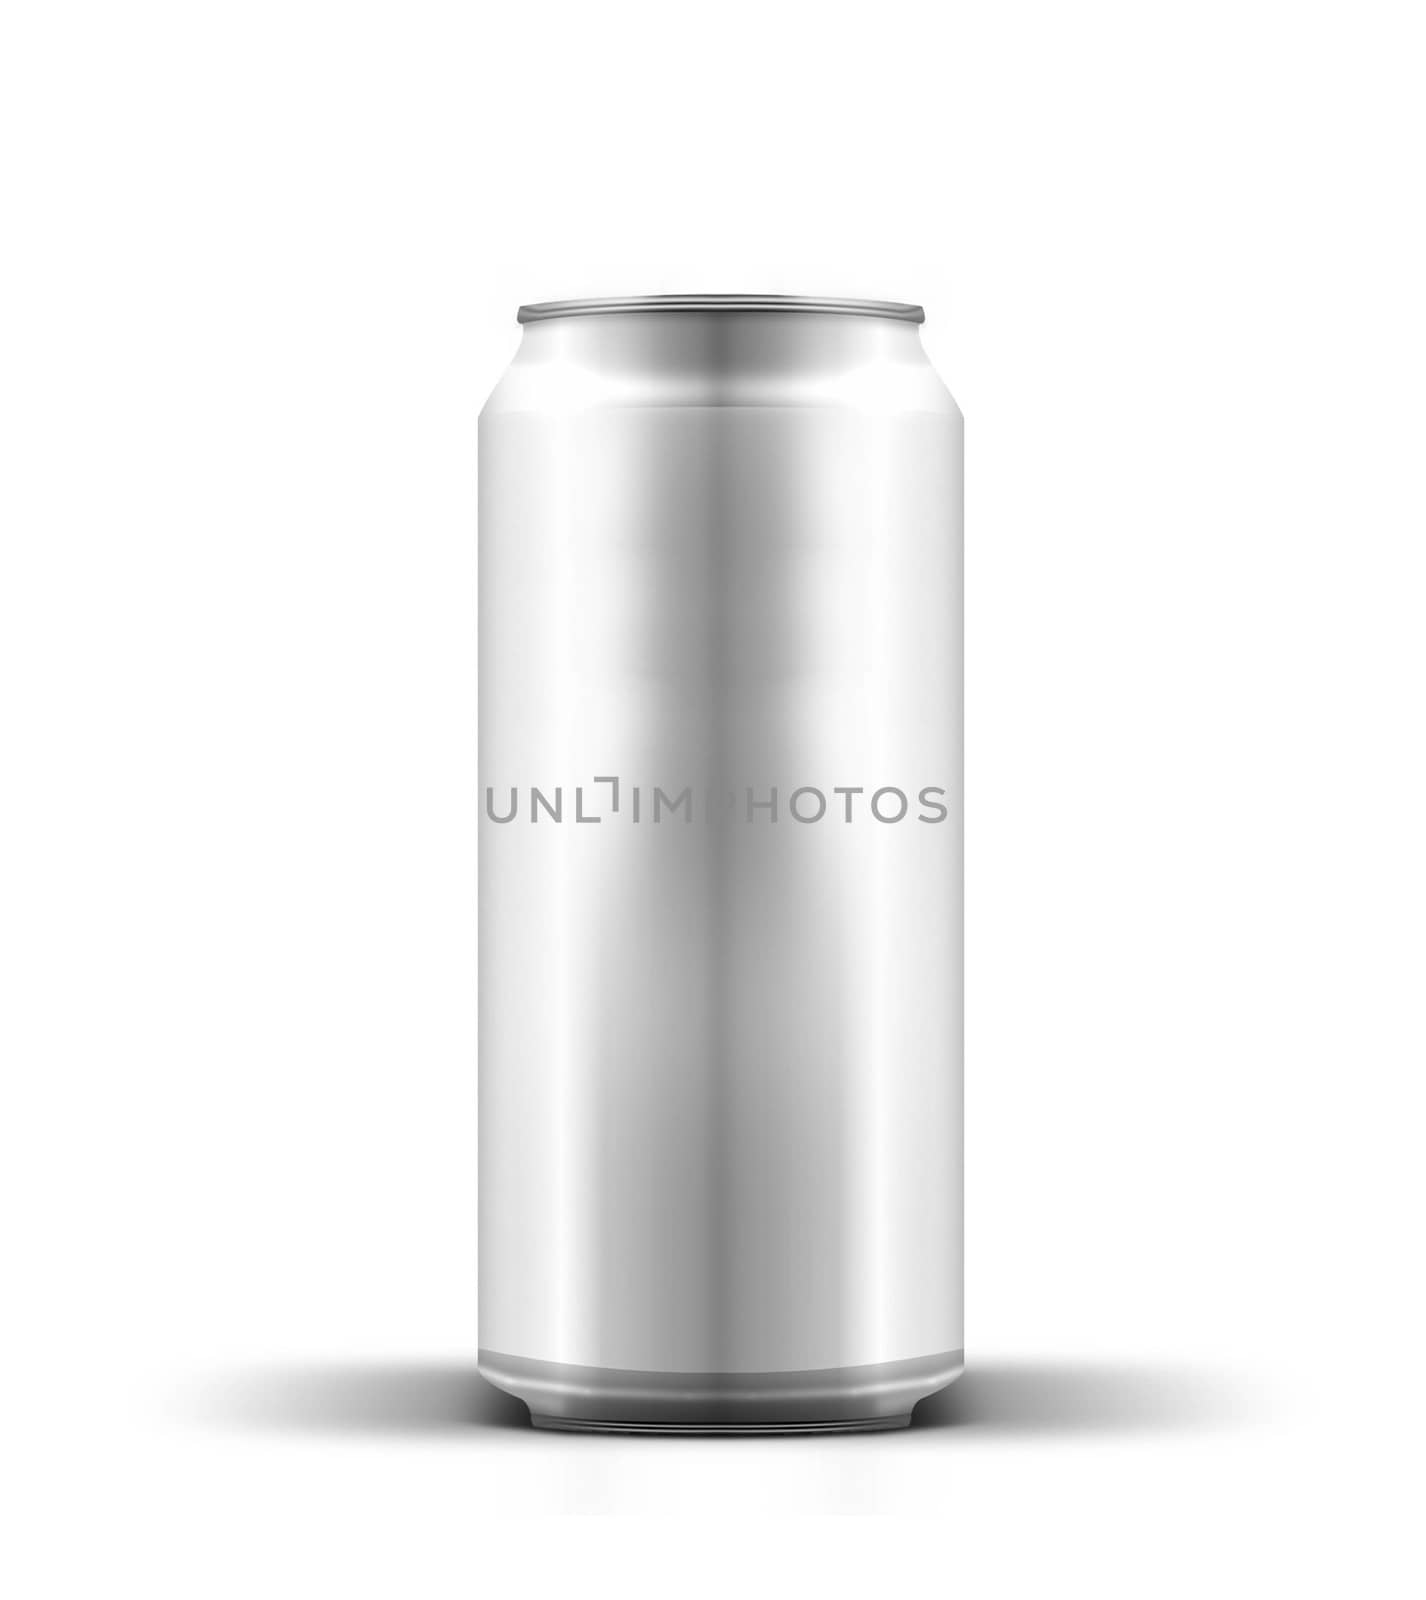 Aluminum beverage can